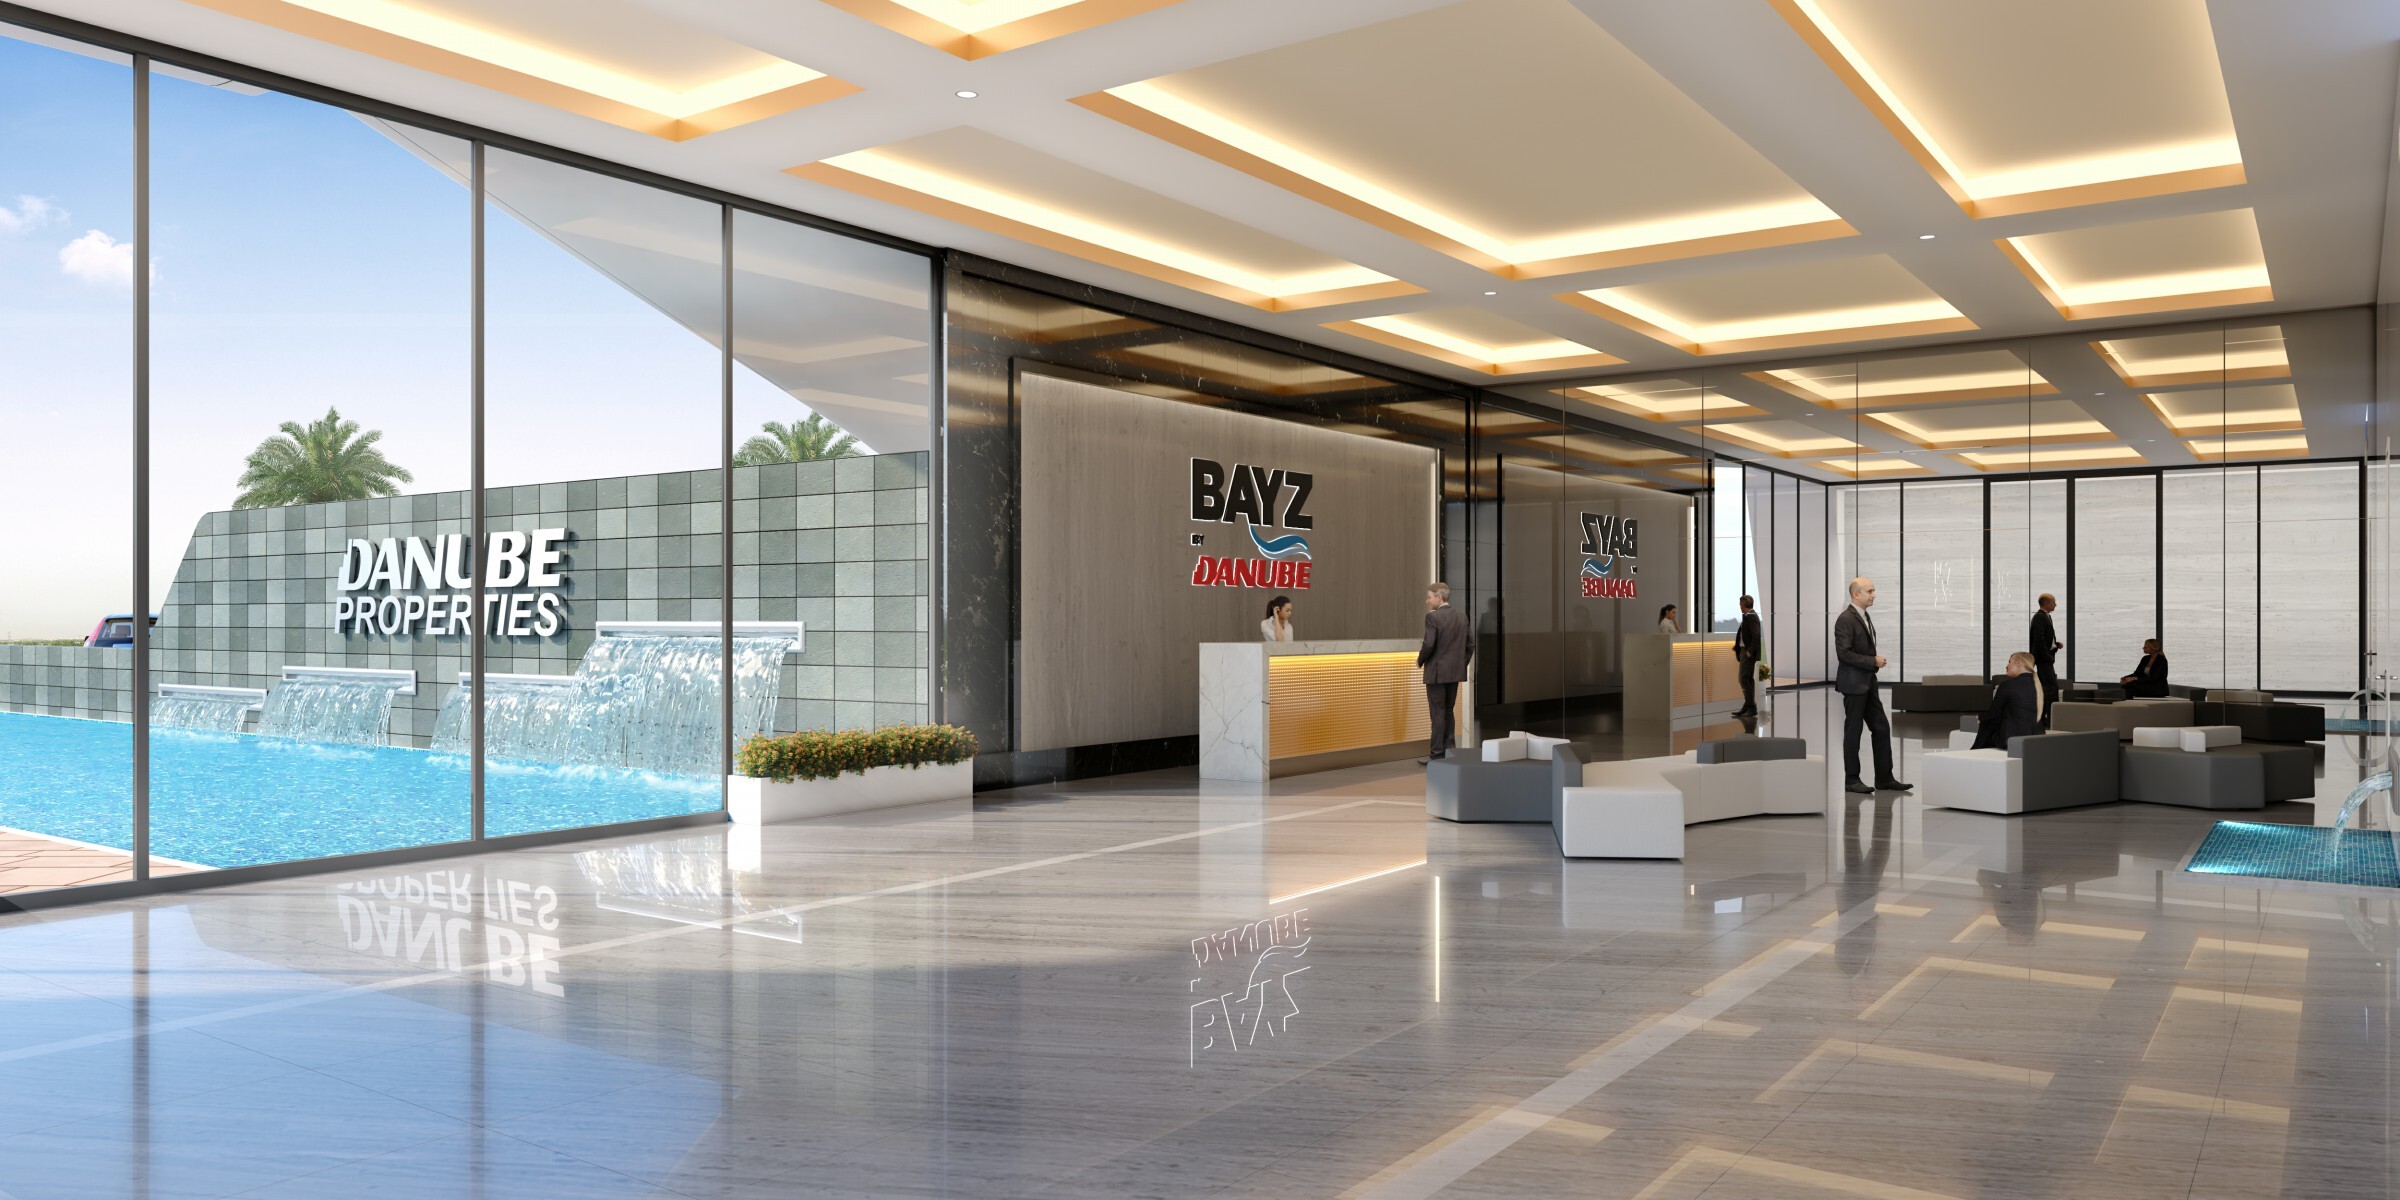 Bayz Tower in Dubai